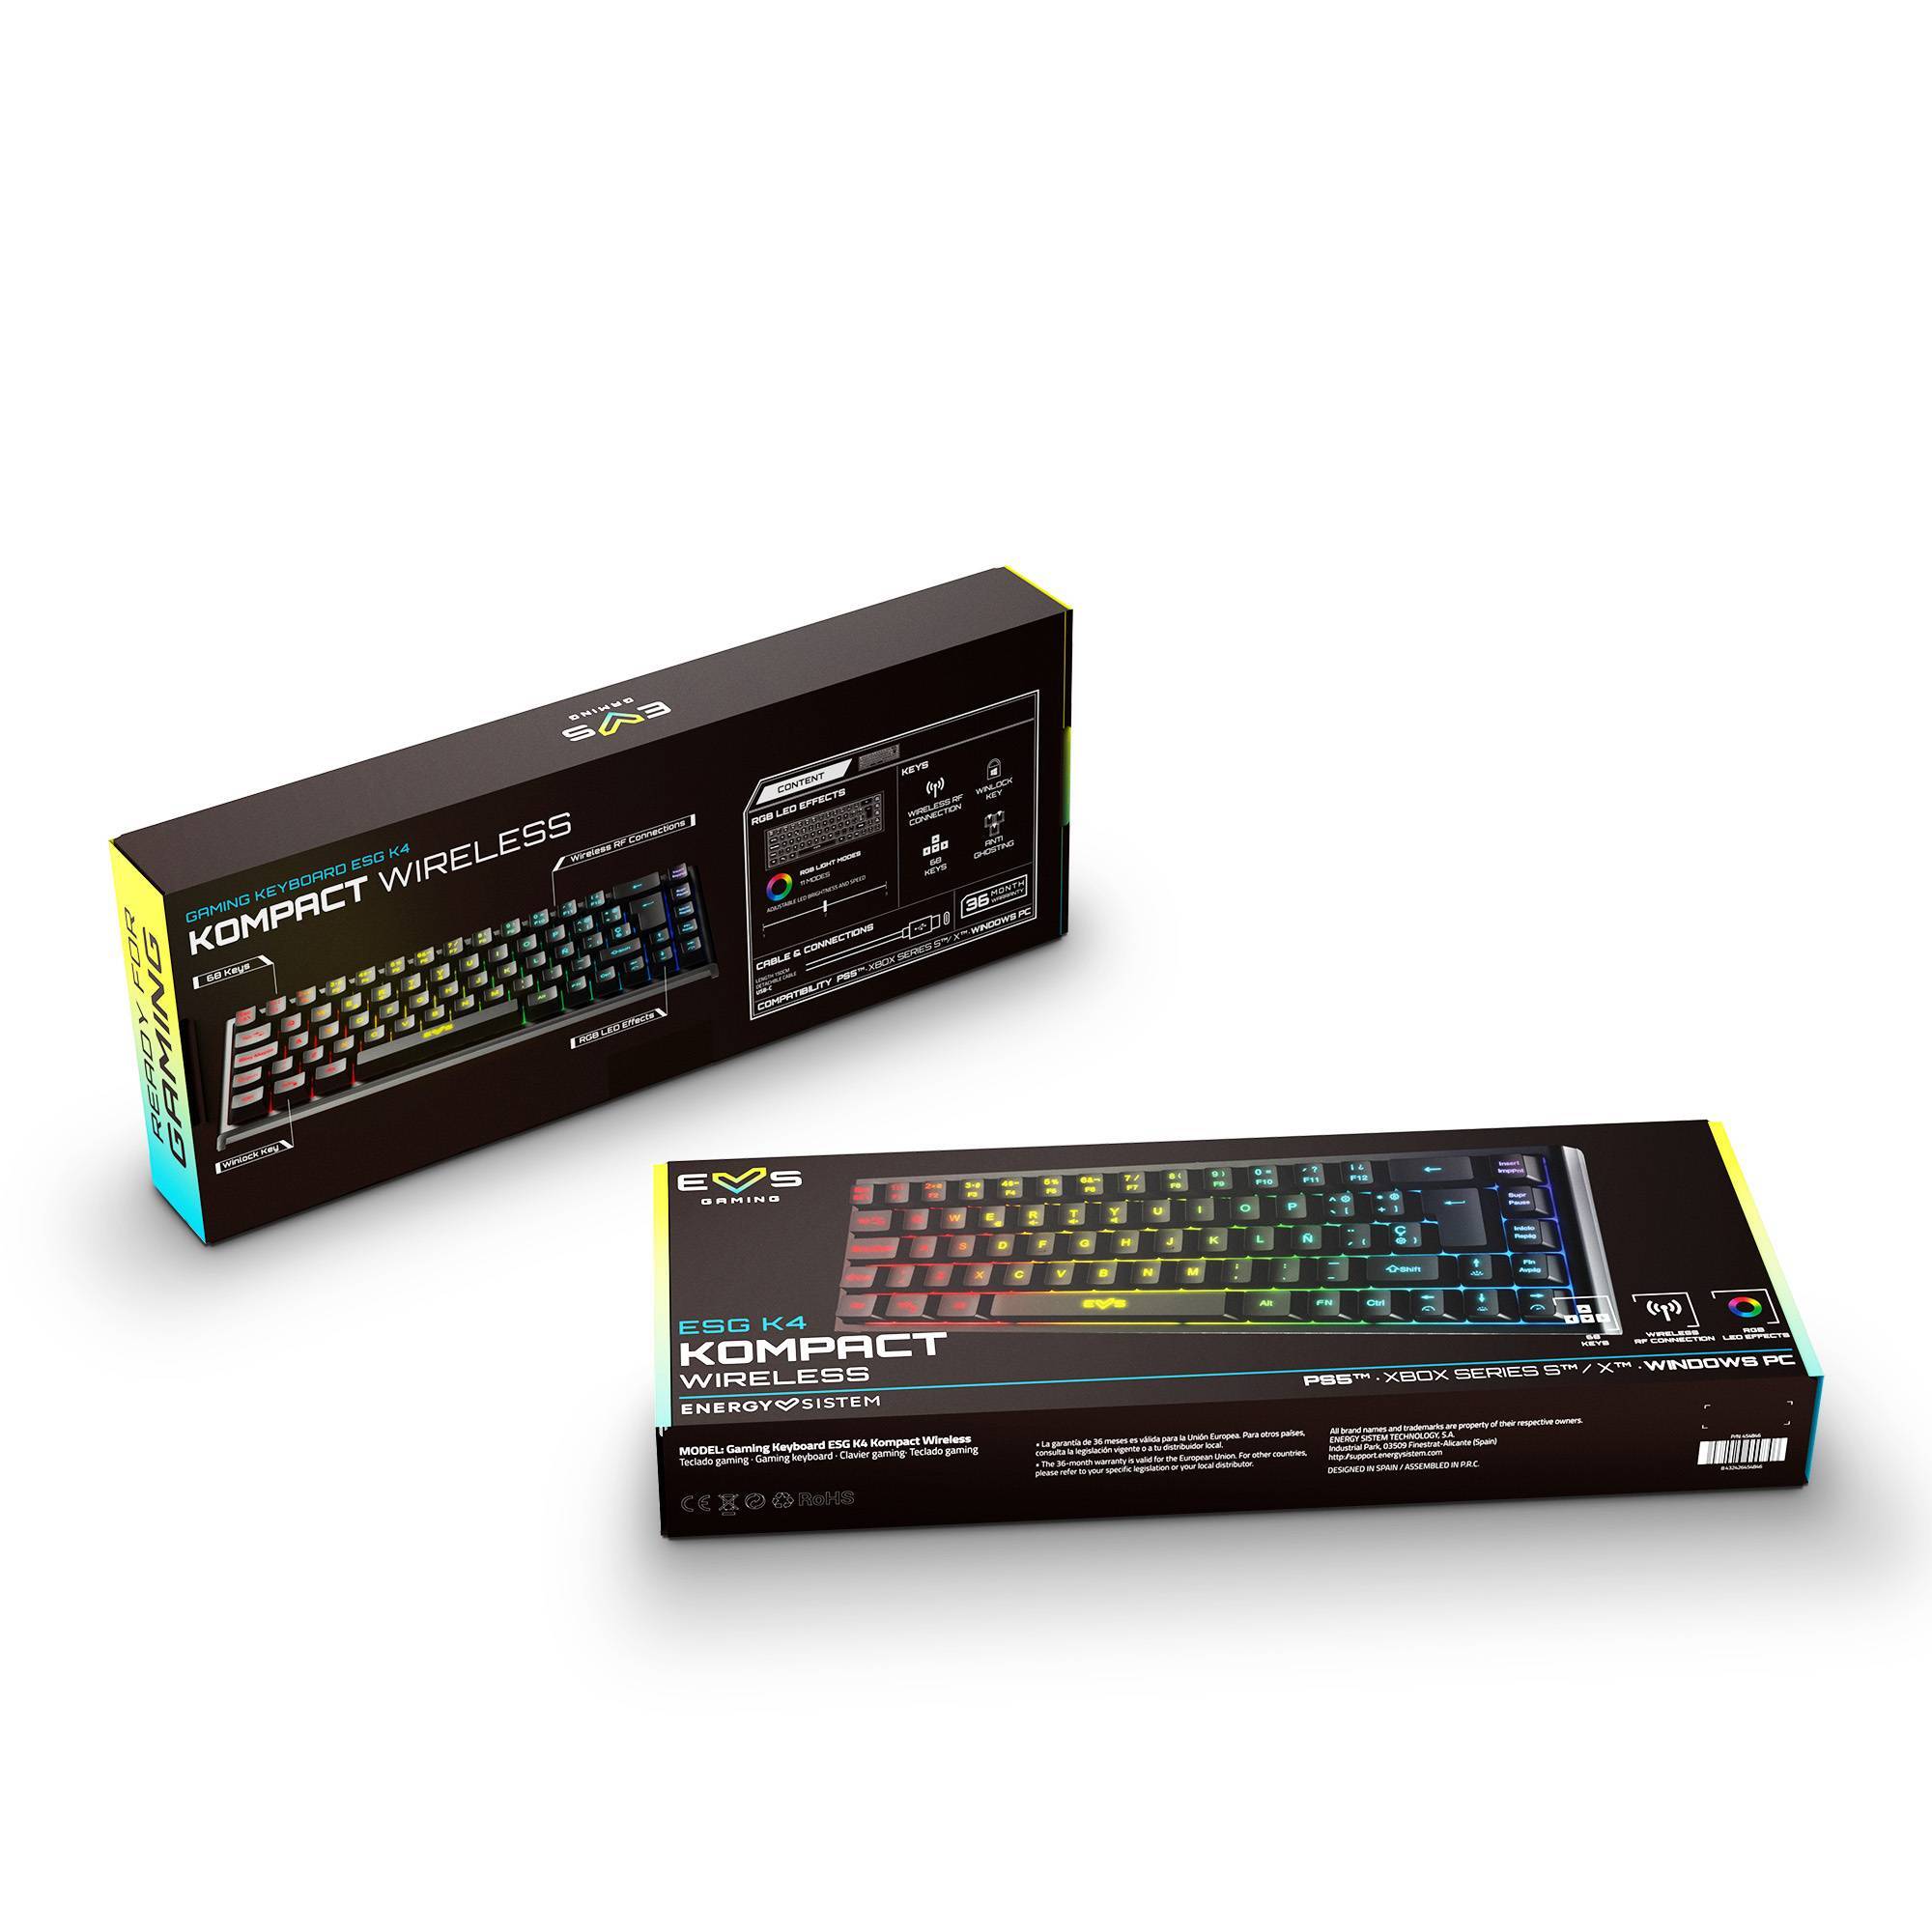 Emballage du clavier gaming ESG K4 KOMPACT-WIRELESS